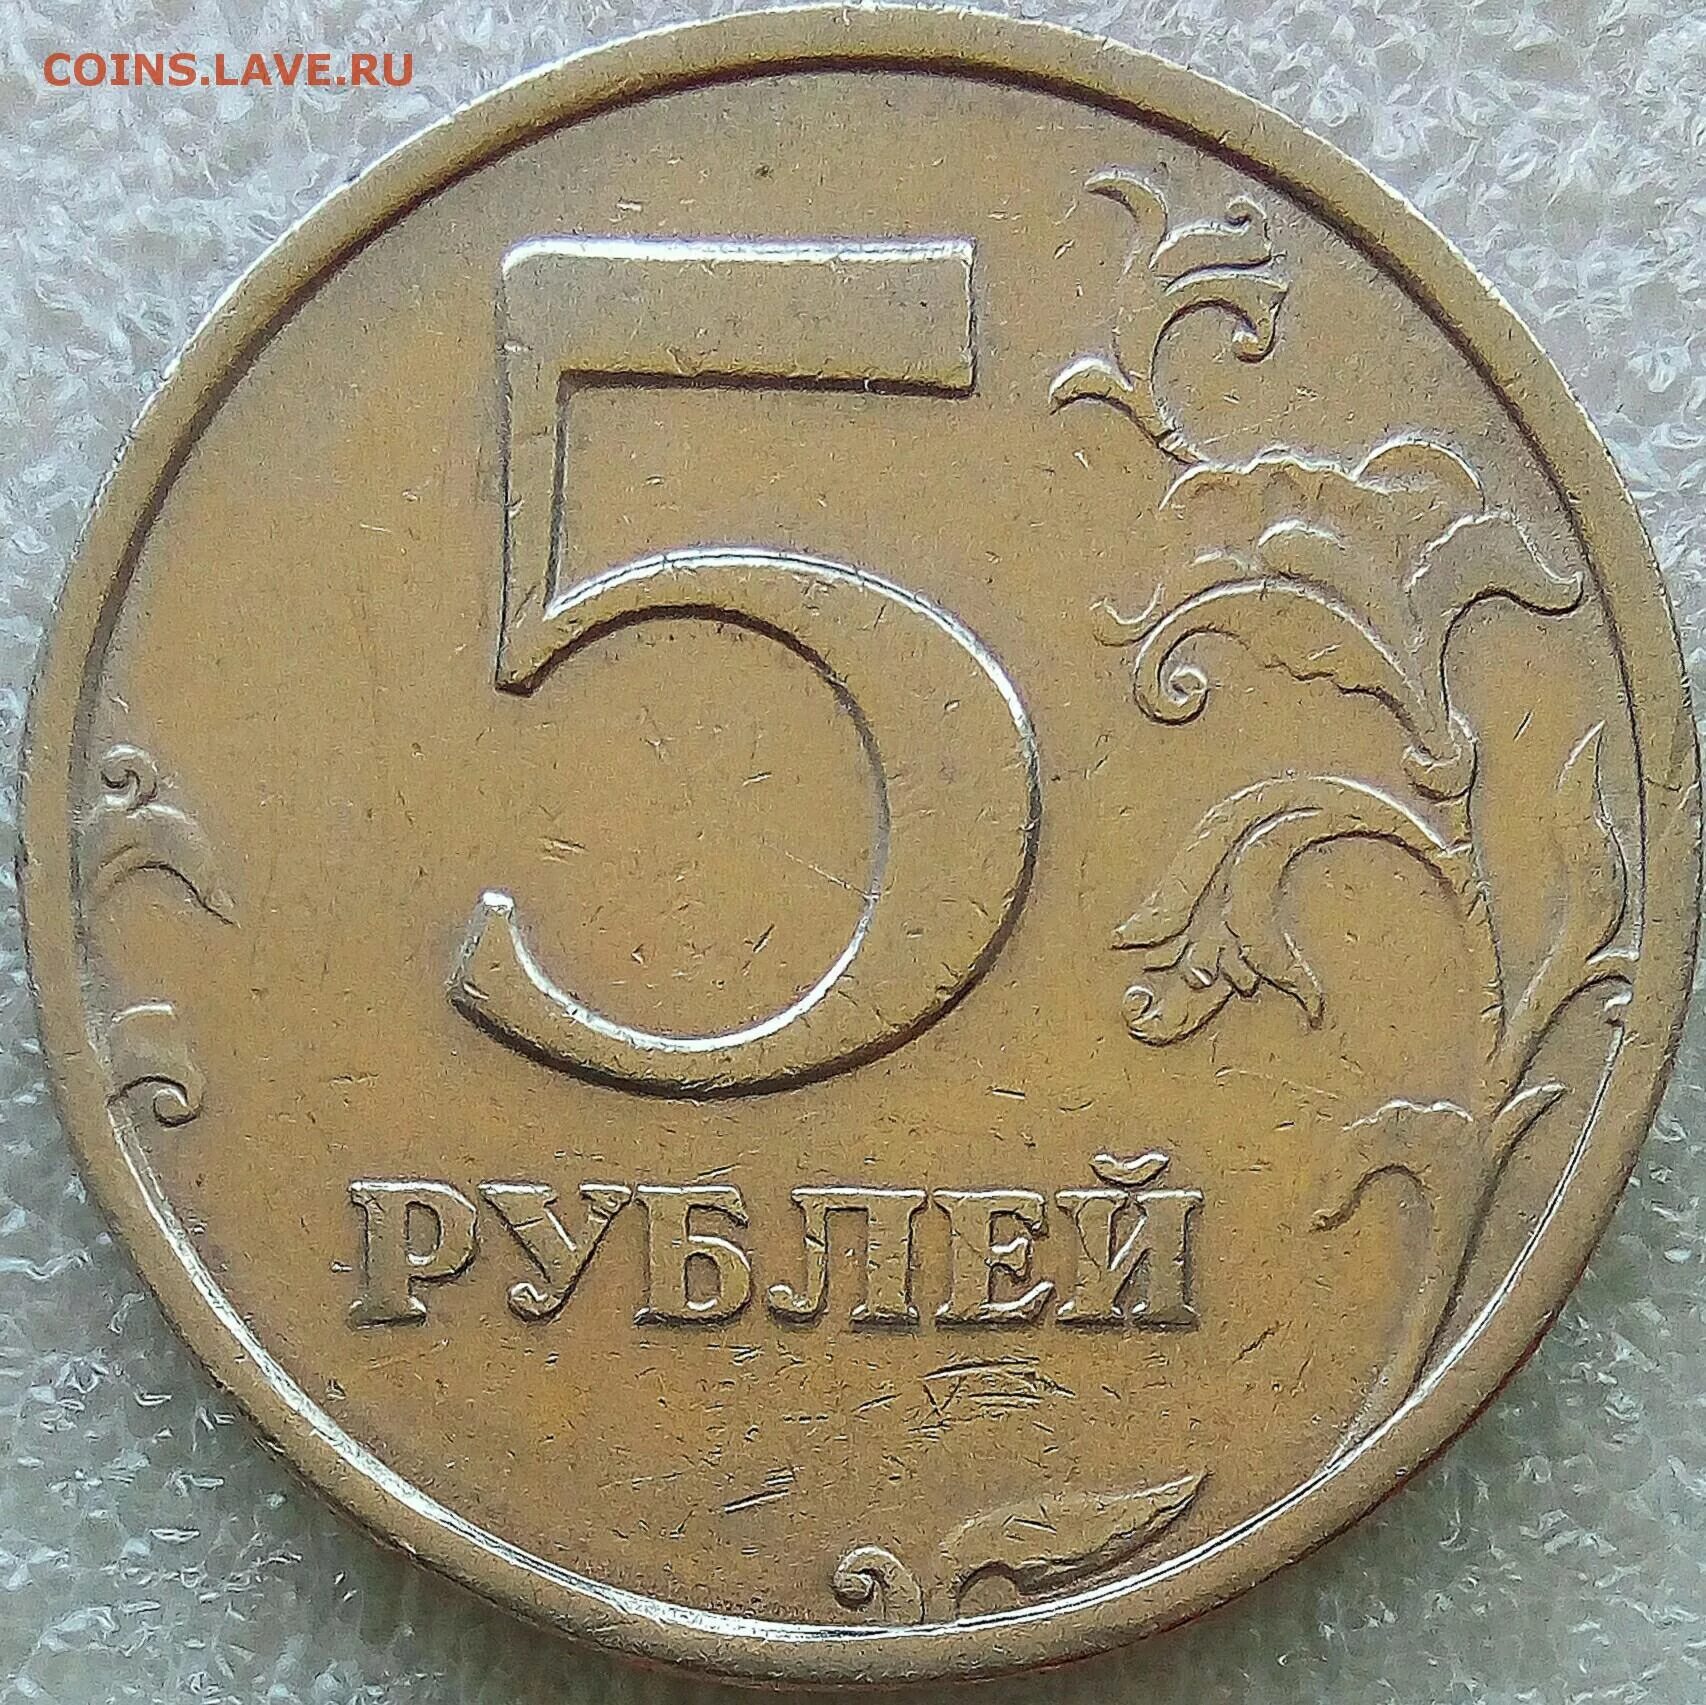 2 Рубля 2008 СП. 5 Рублей 1998 года в черном цвете. Покажи на фото 5 рублей 2008 года редкую. 5 Плюс 3 бонусная монета.